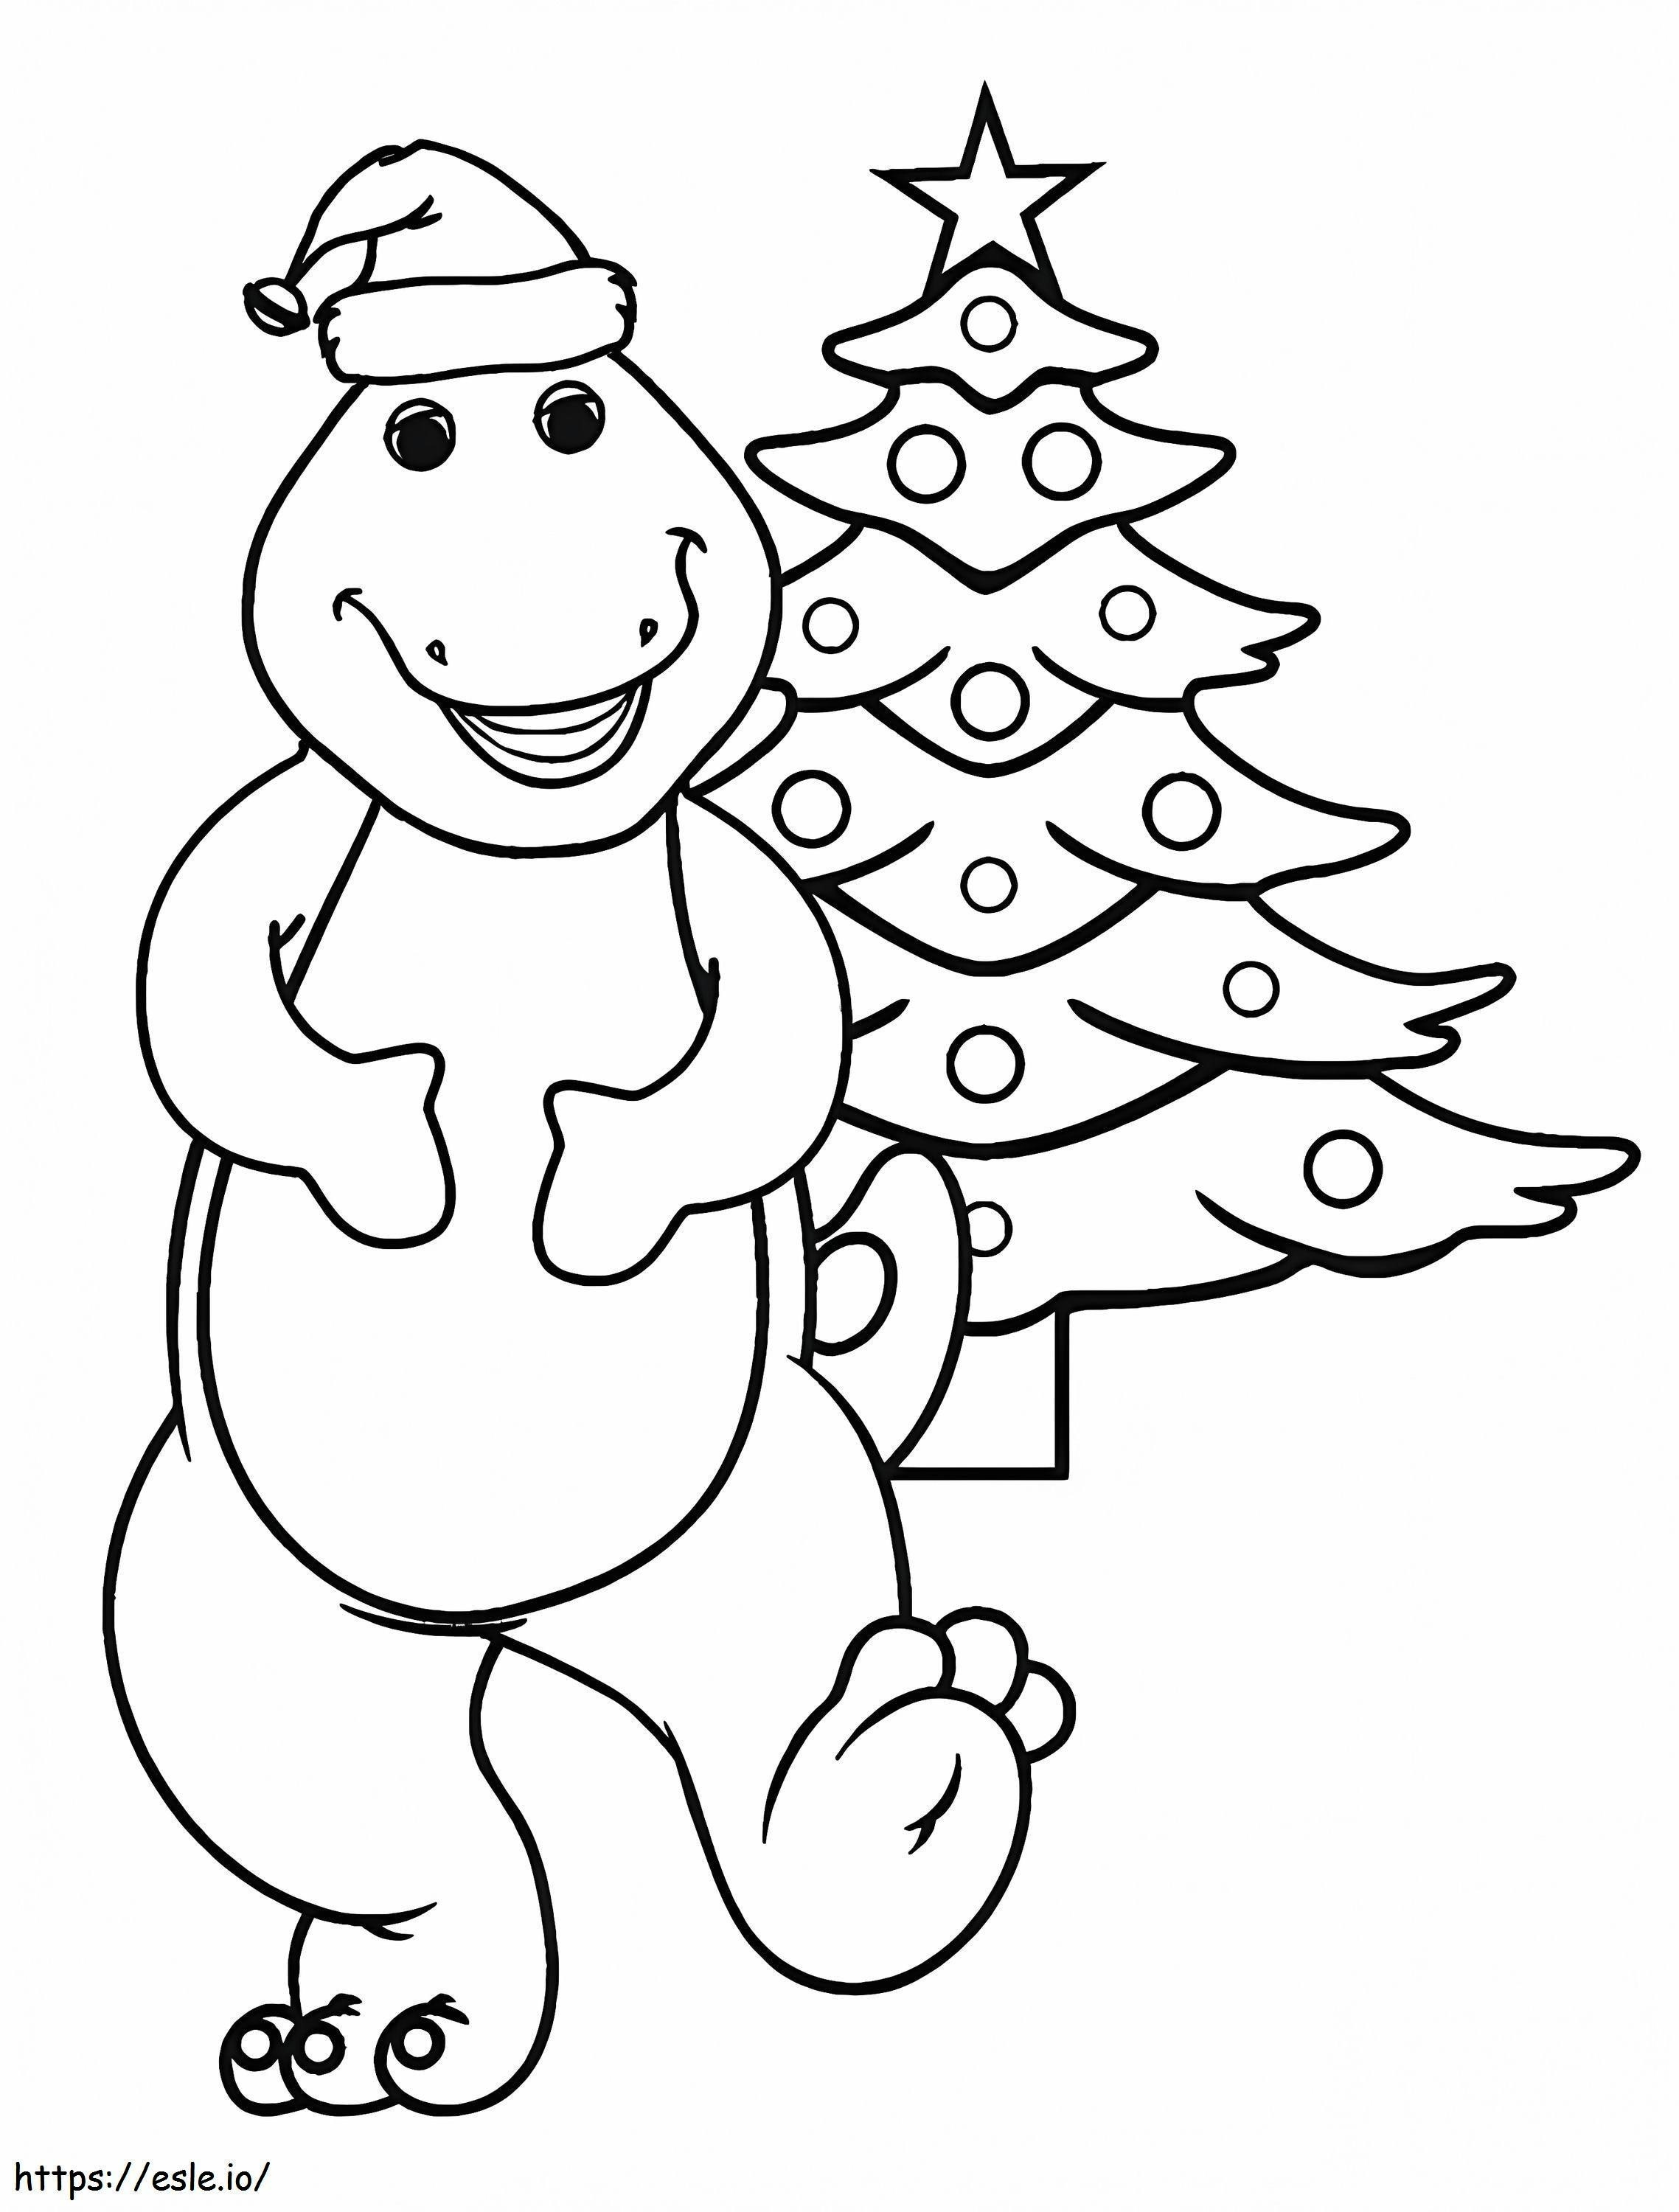 1583224139 Barney für Weihnachten Barney Weihnachten ausmalbilder